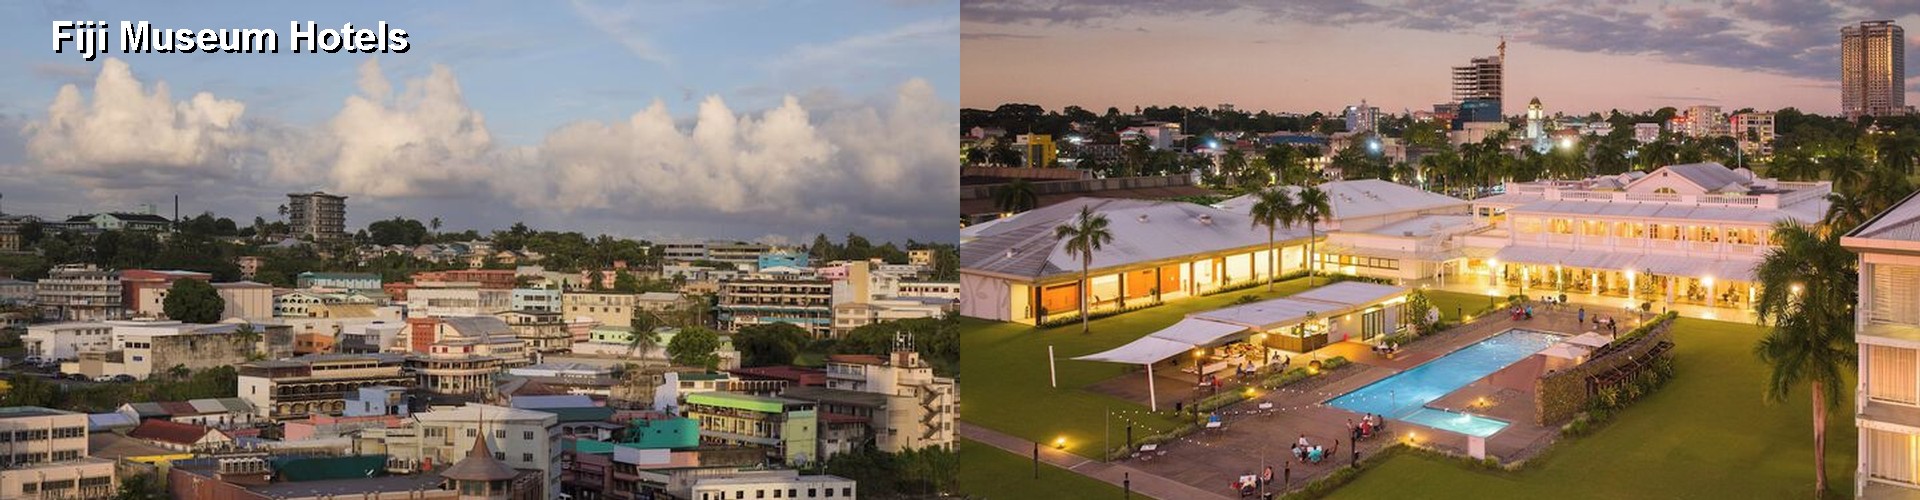 3 Best Hotels near Fiji Museum